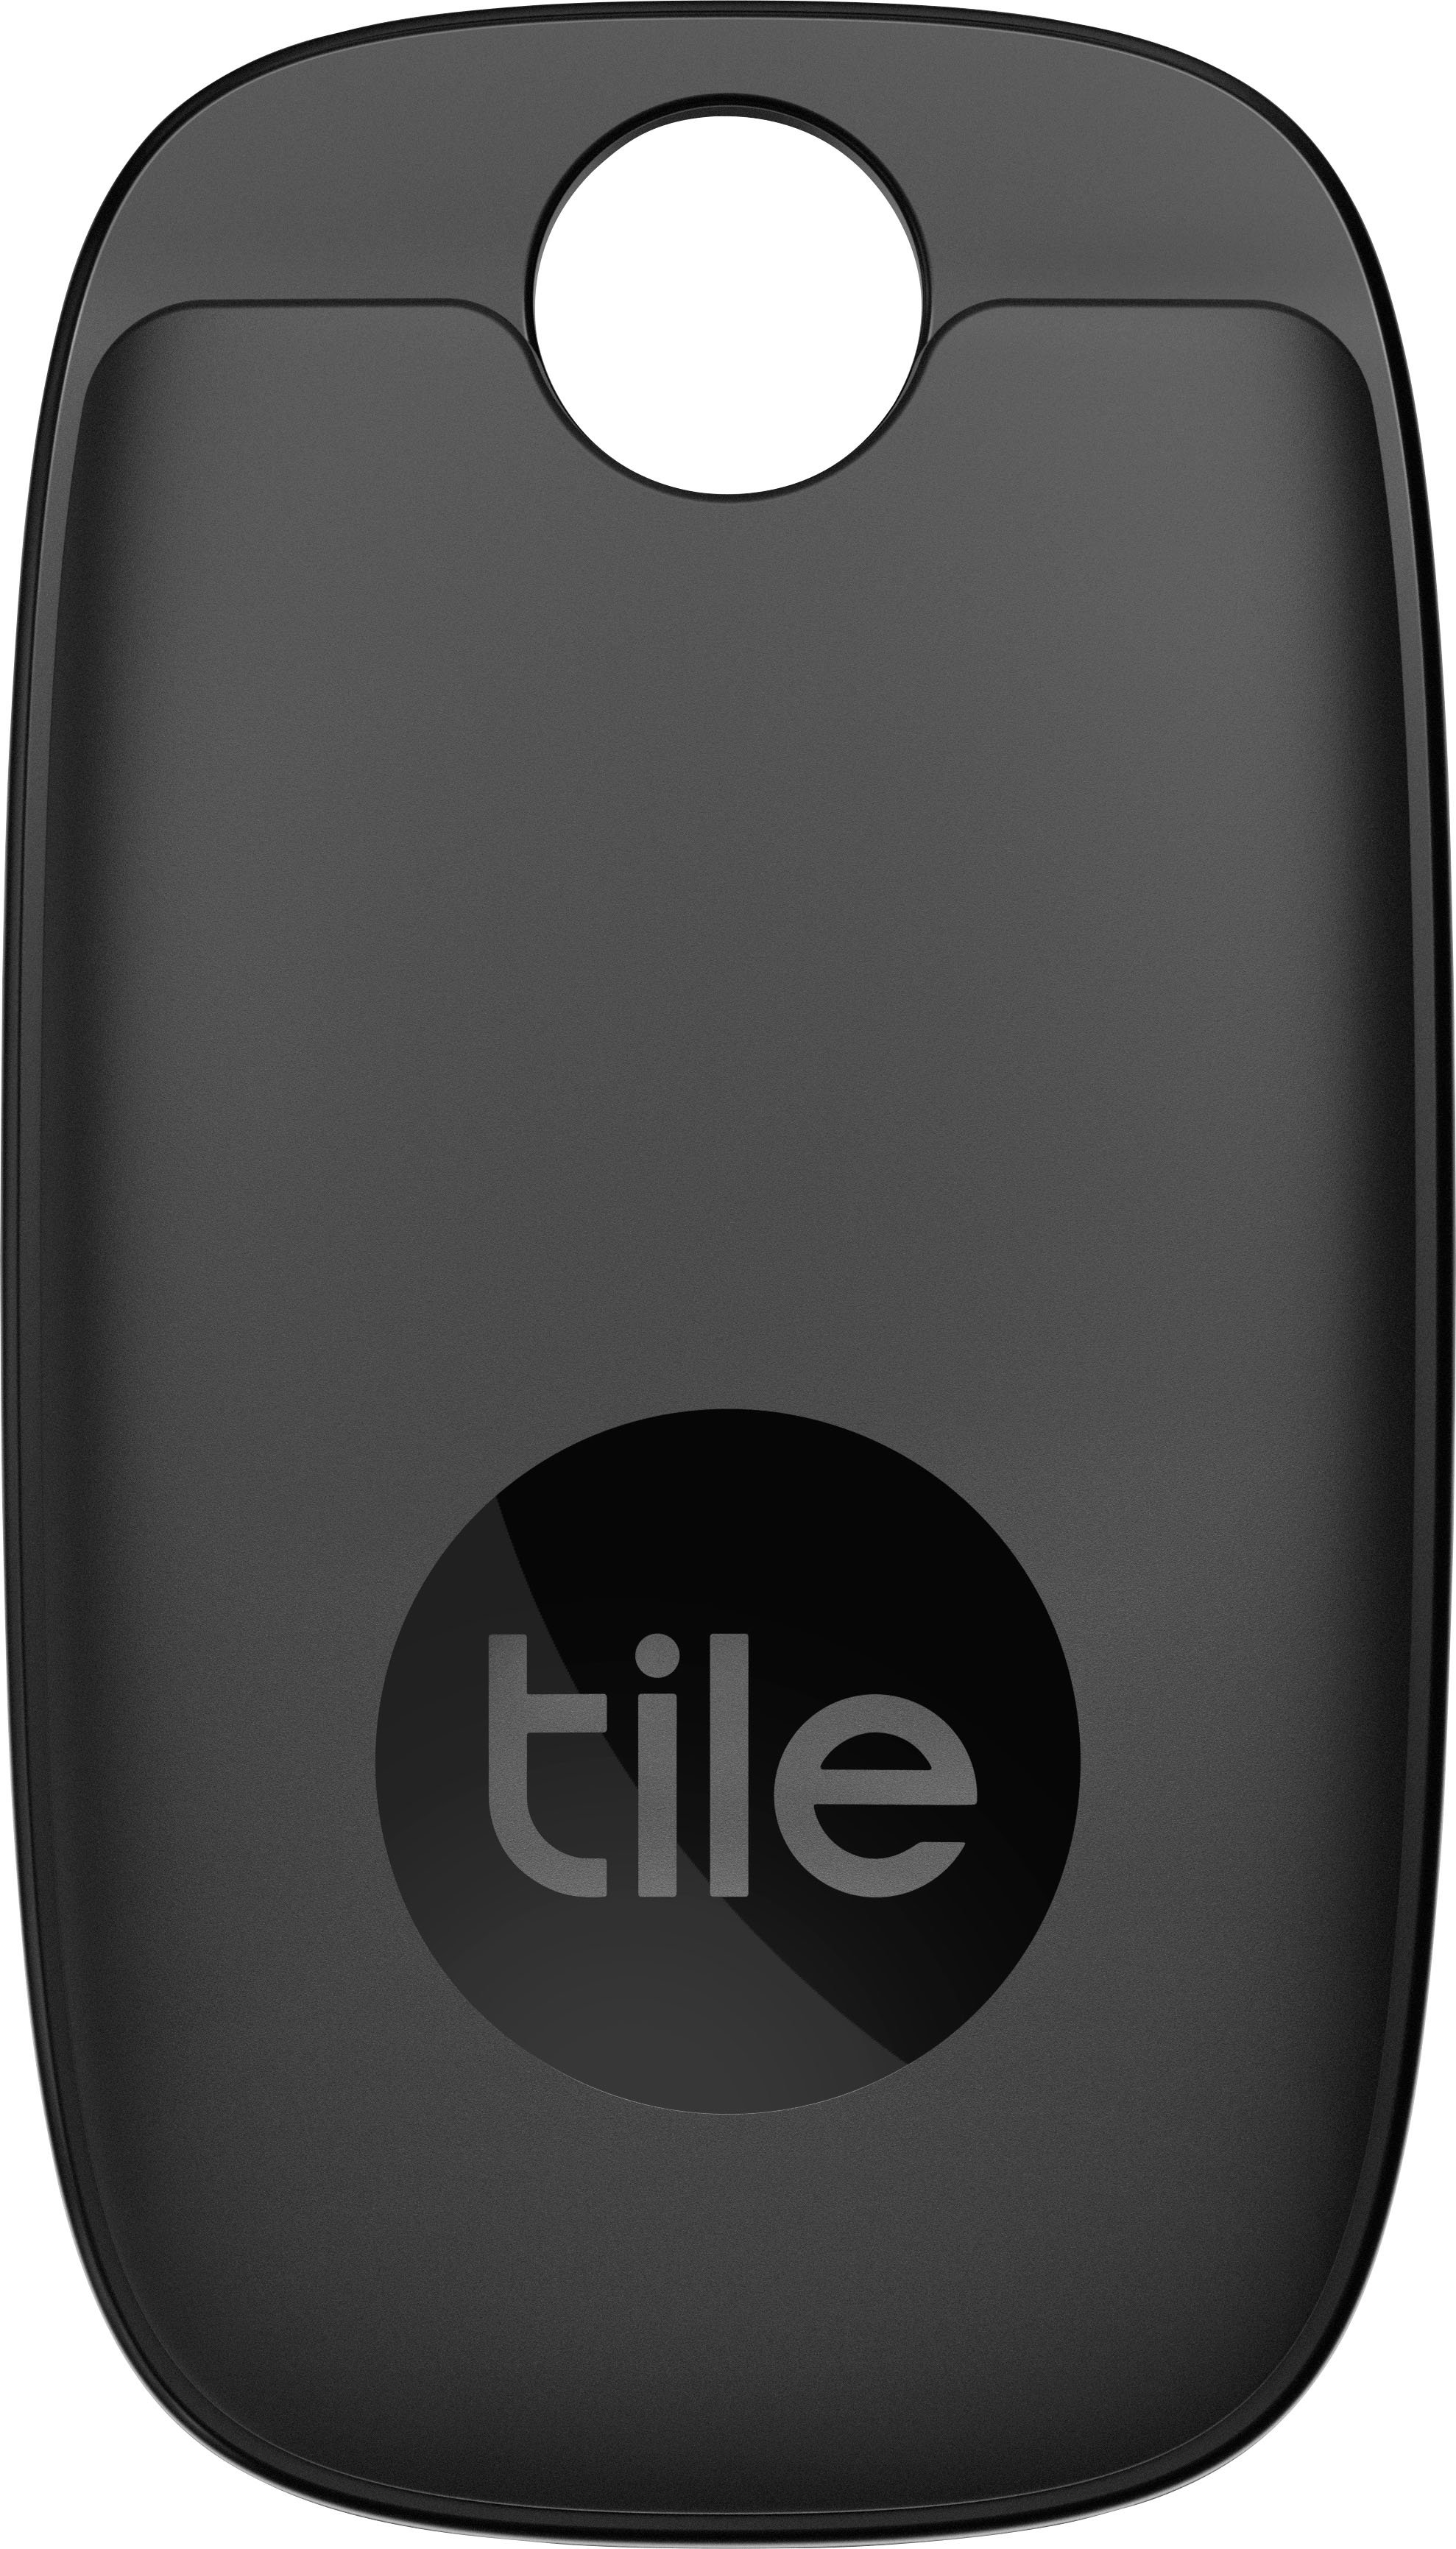 Tile Pro (2022) 1 pack Black RE-43001 - Best Buy